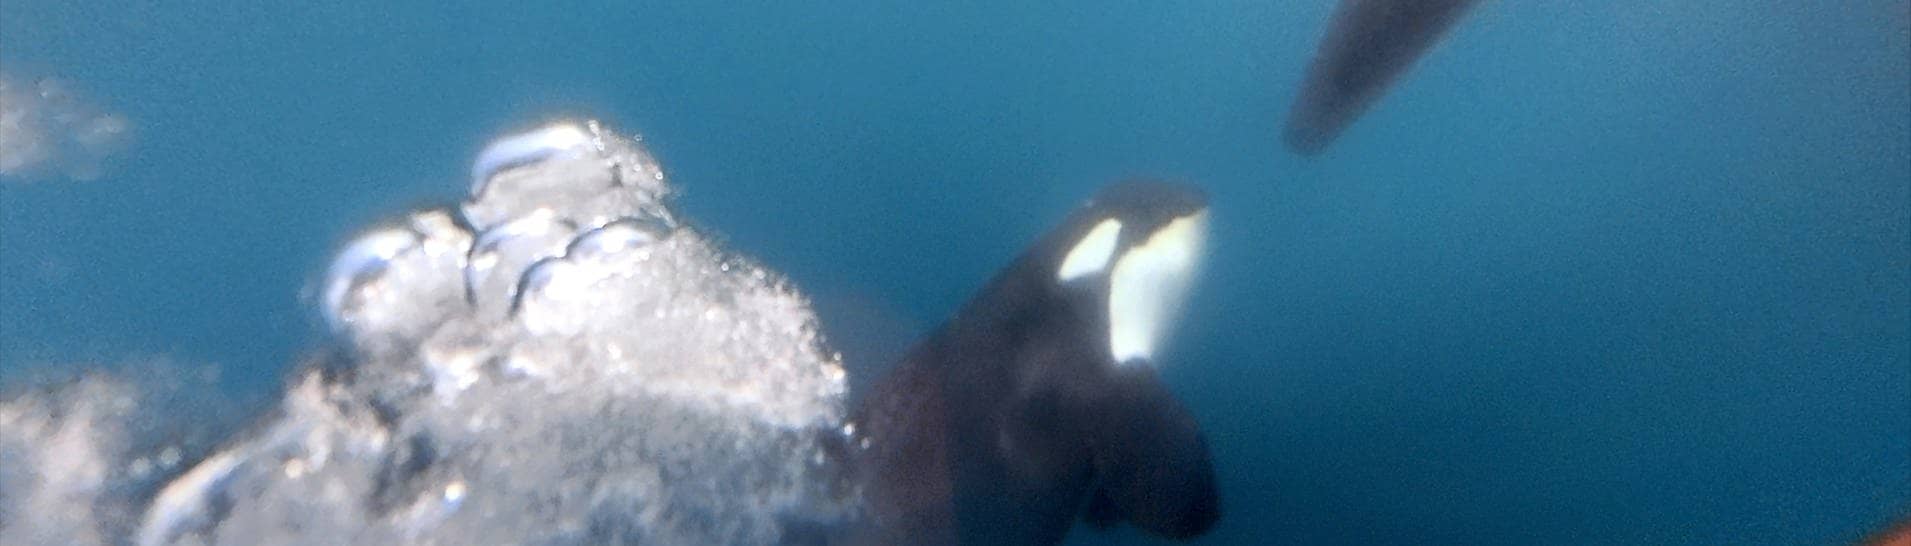 Ocean Race: Ein Orca zerstört das Rude eines der teilnehmenden Boote.